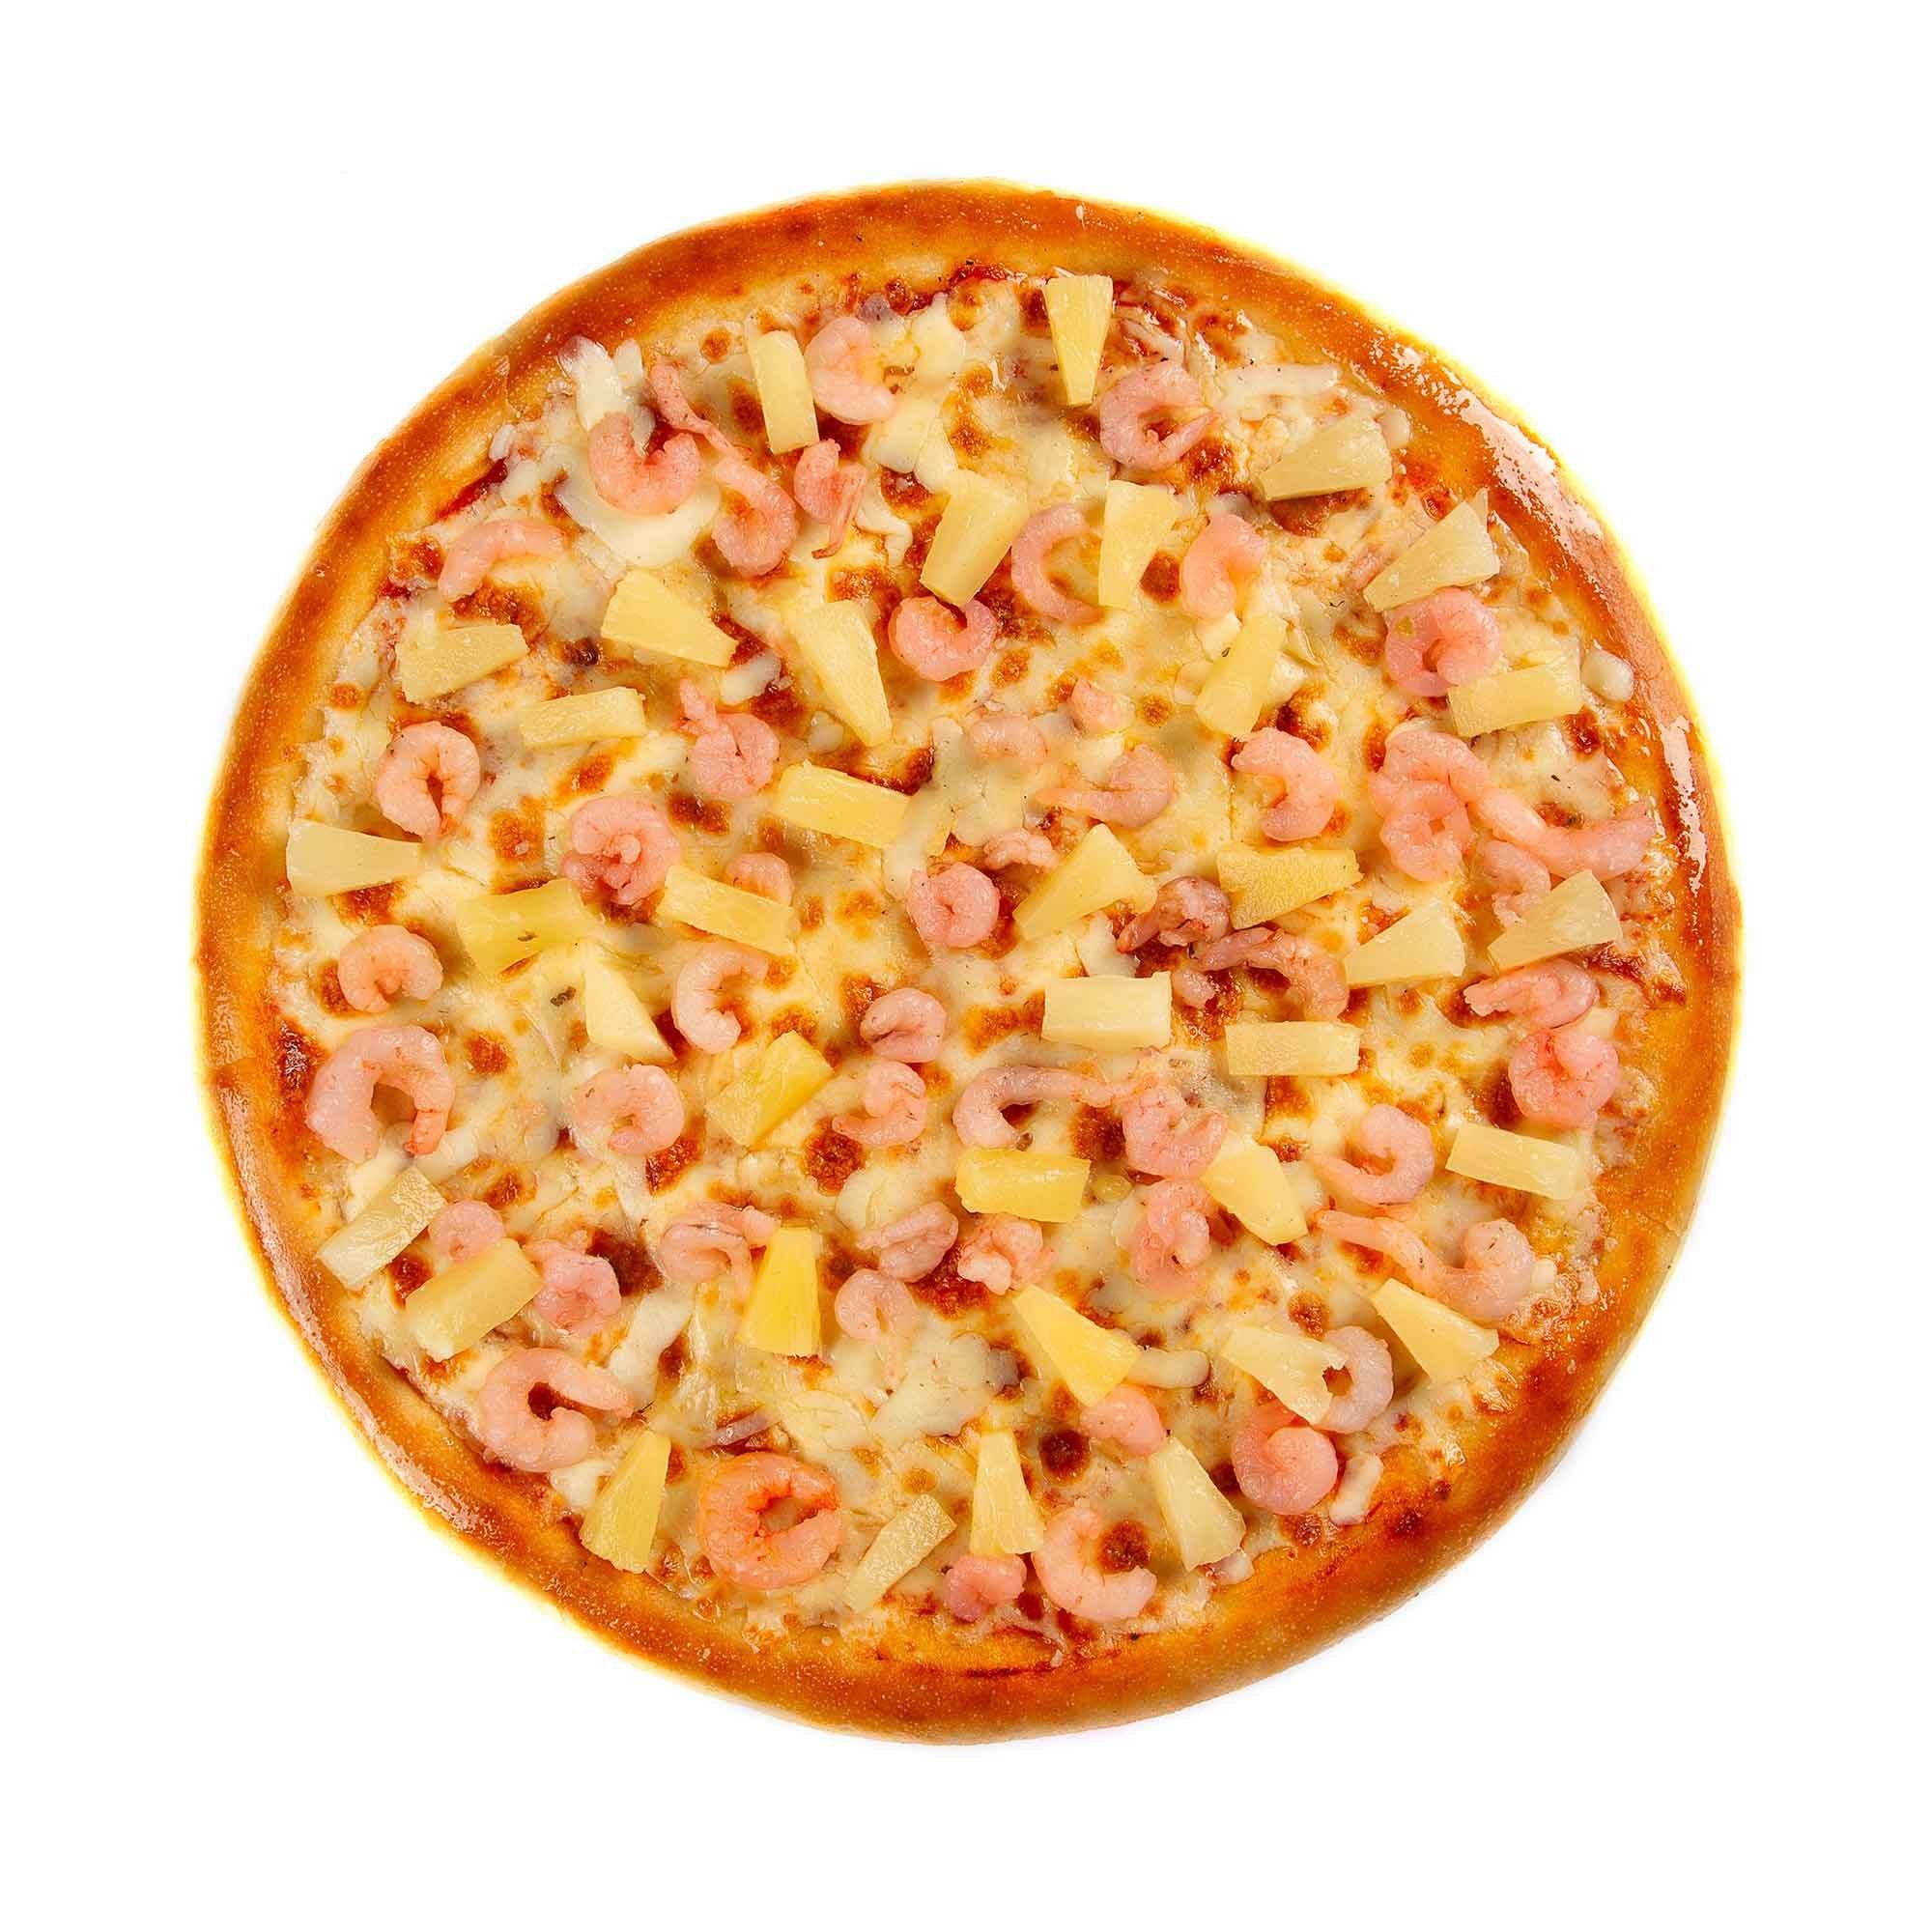 состав пицца гавайская с ананасами фото 51